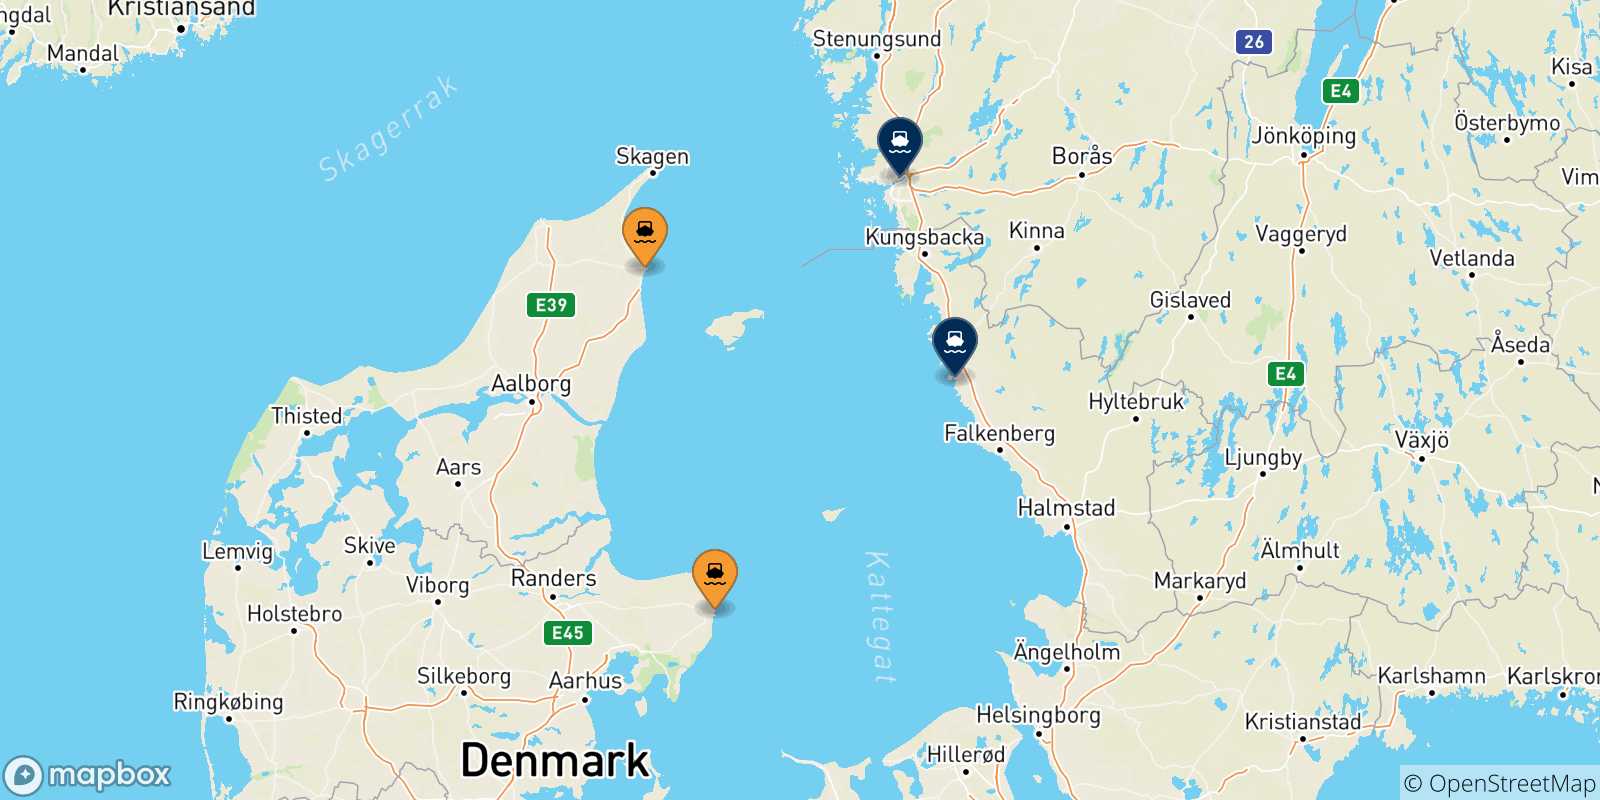 Mappa delle possibili rotte tra la Danimarca e la Svezia